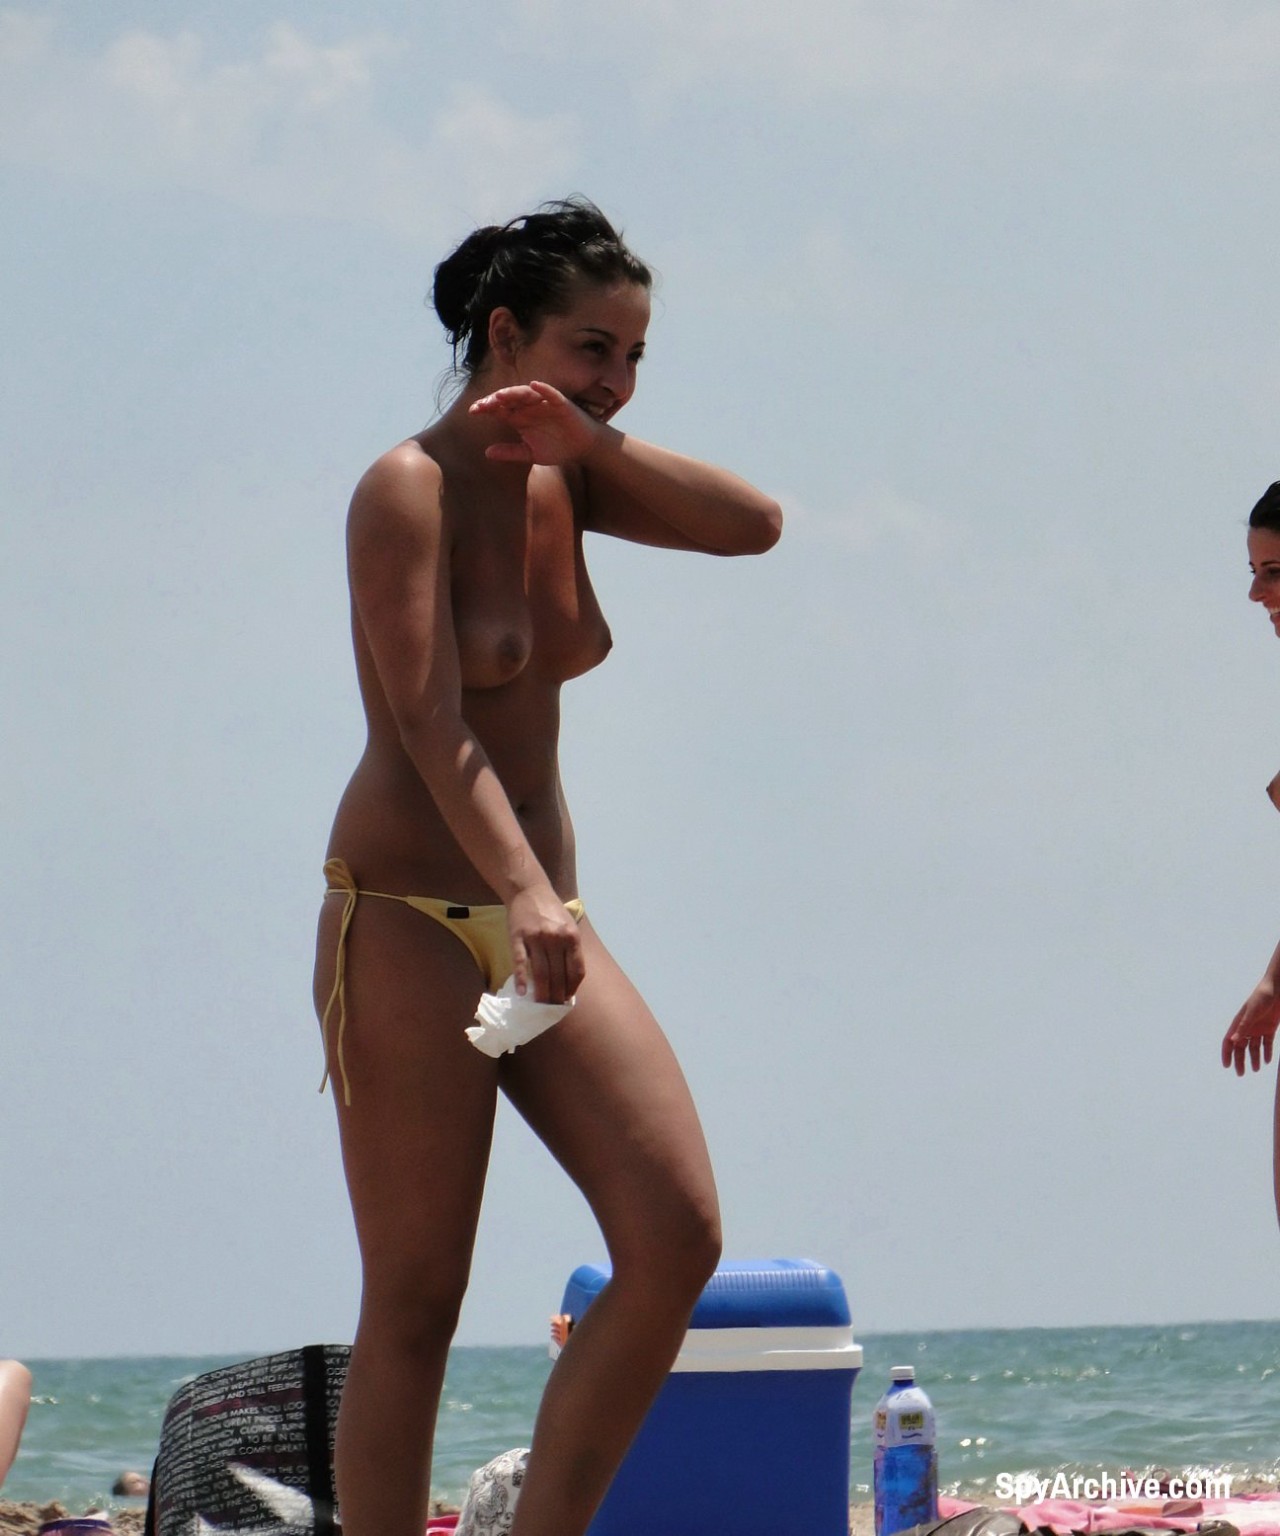 Spiare le amiche brasiliane in topless in spiaggia
 #72242100